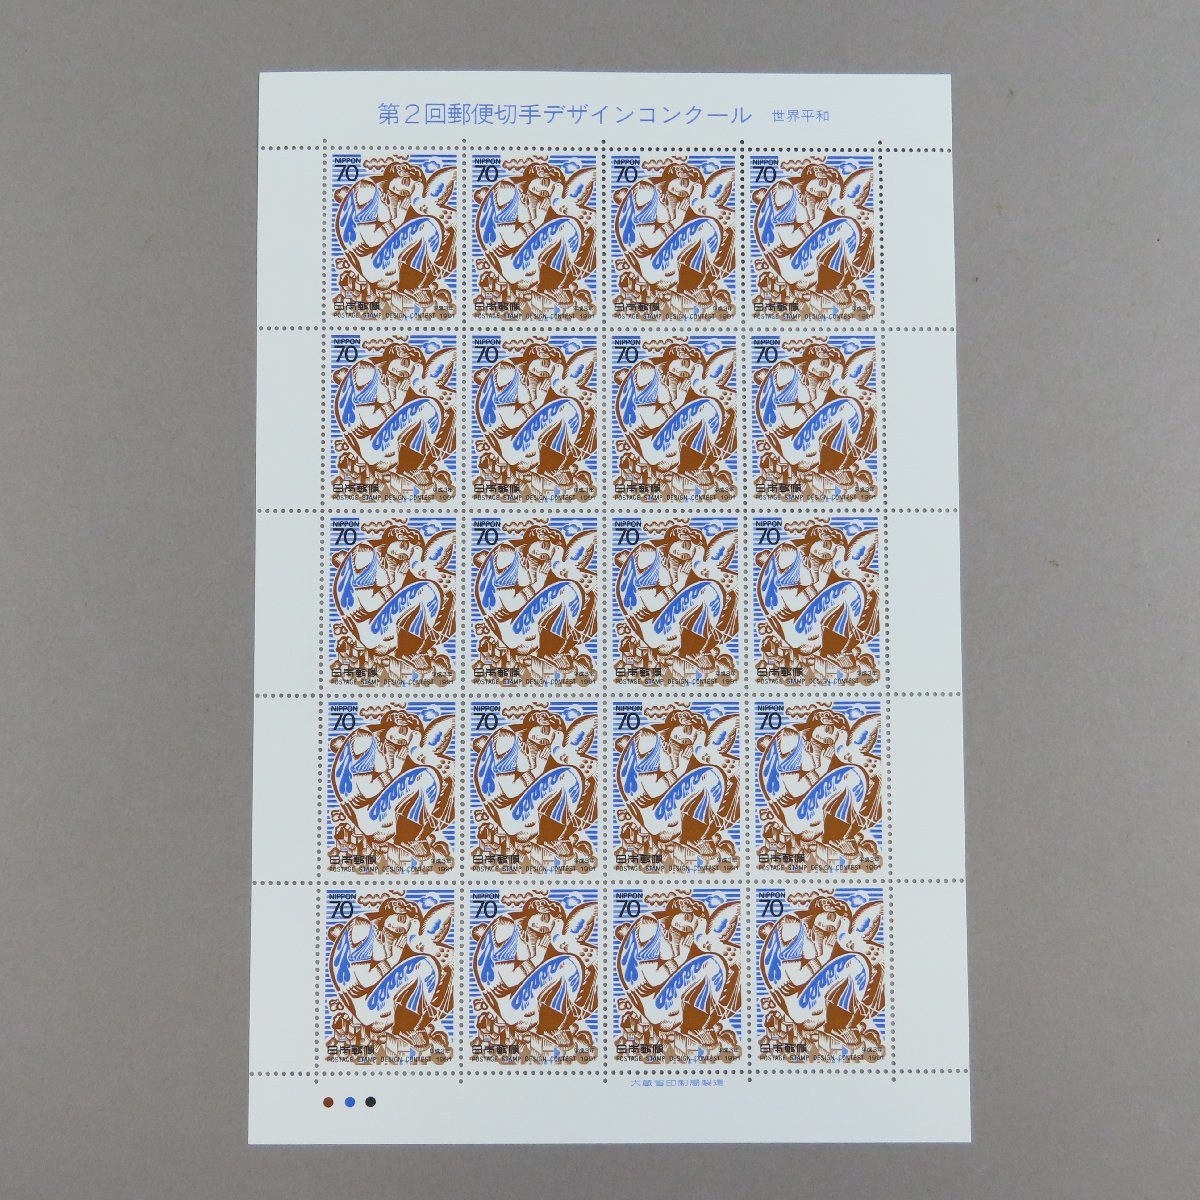 【切手1164】第2回郵便切手デザインコンクール 世界平和 70円20面1シート_画像2